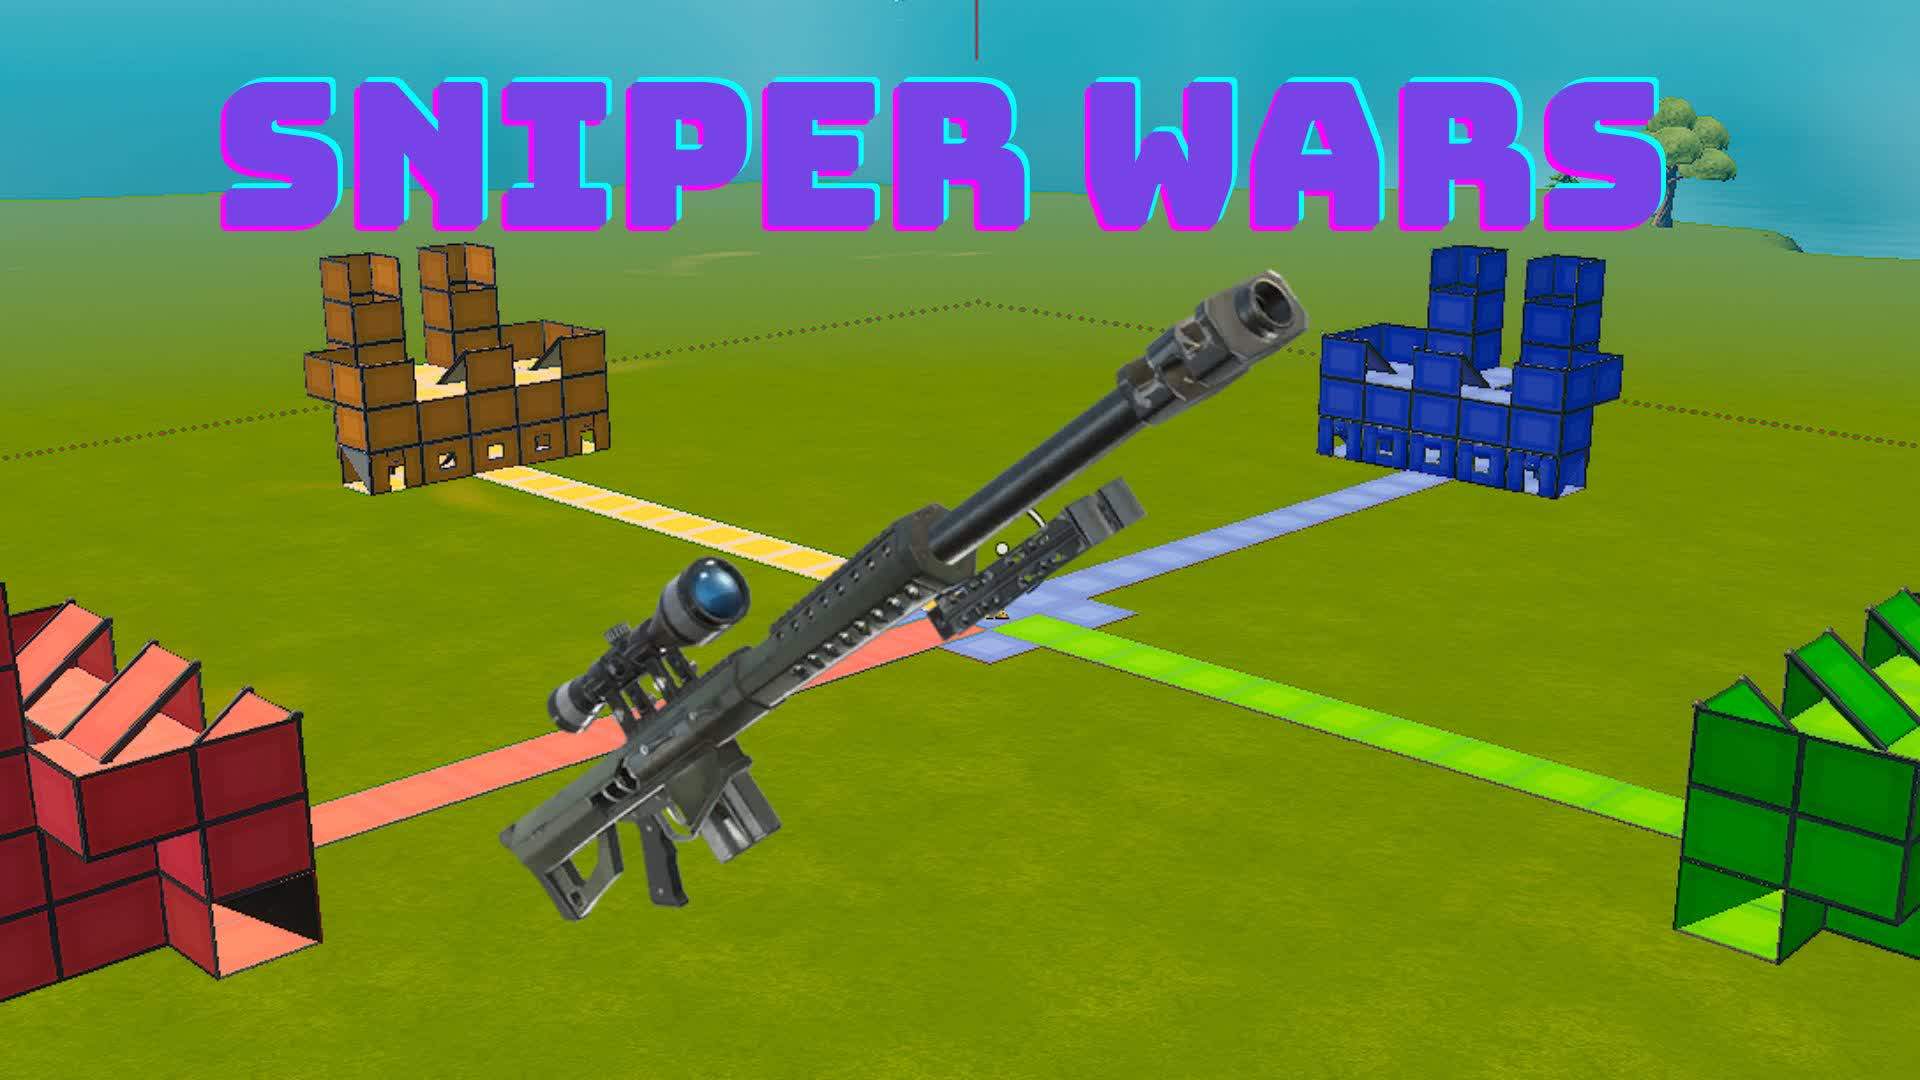 Sniper wars